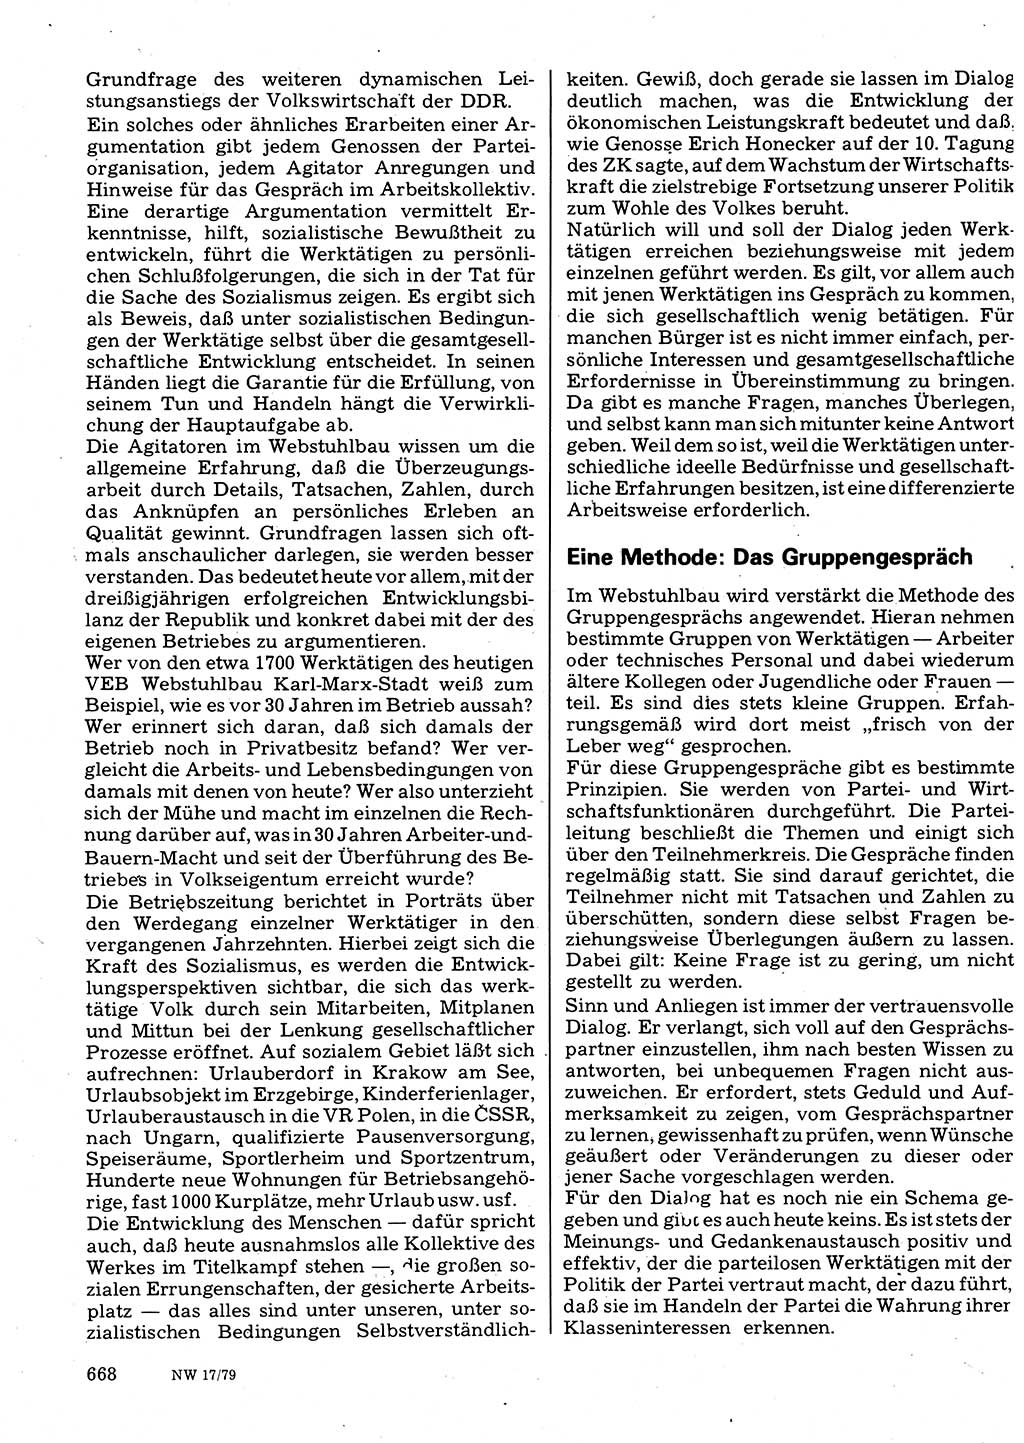 Neuer Weg (NW), Organ des Zentralkomitees (ZK) der SED (Sozialistische Einheitspartei Deutschlands) für Fragen des Parteilebens, 34. Jahrgang [Deutsche Demokratische Republik (DDR)] 1979, Seite 668 (NW ZK SED DDR 1979, S. 668)